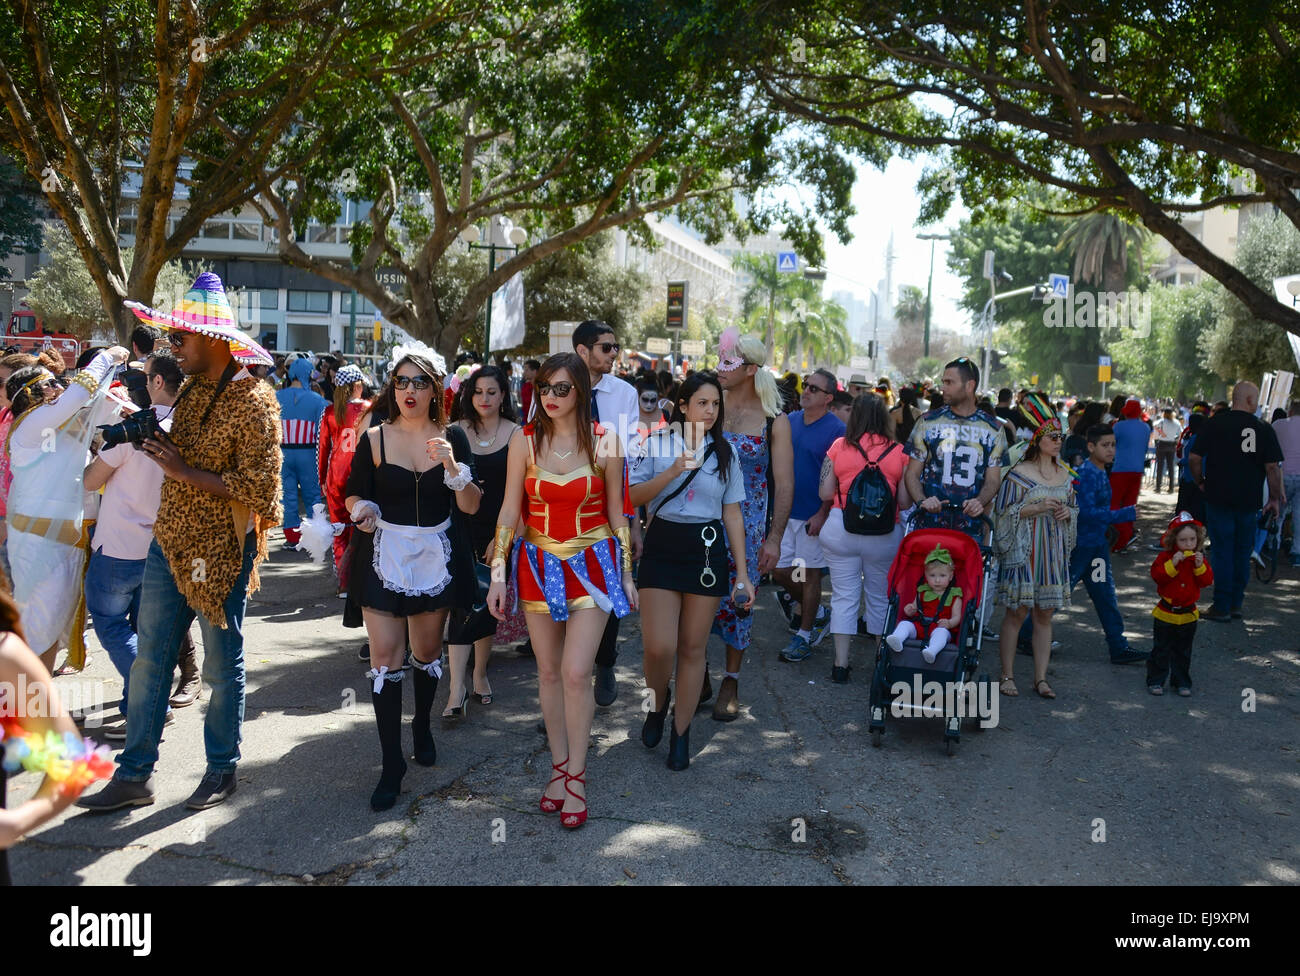 Tel Aviv, Israele - 6 Marzo 2015: persone non identificate avendo divertimento su Purim street party. Foto Stock